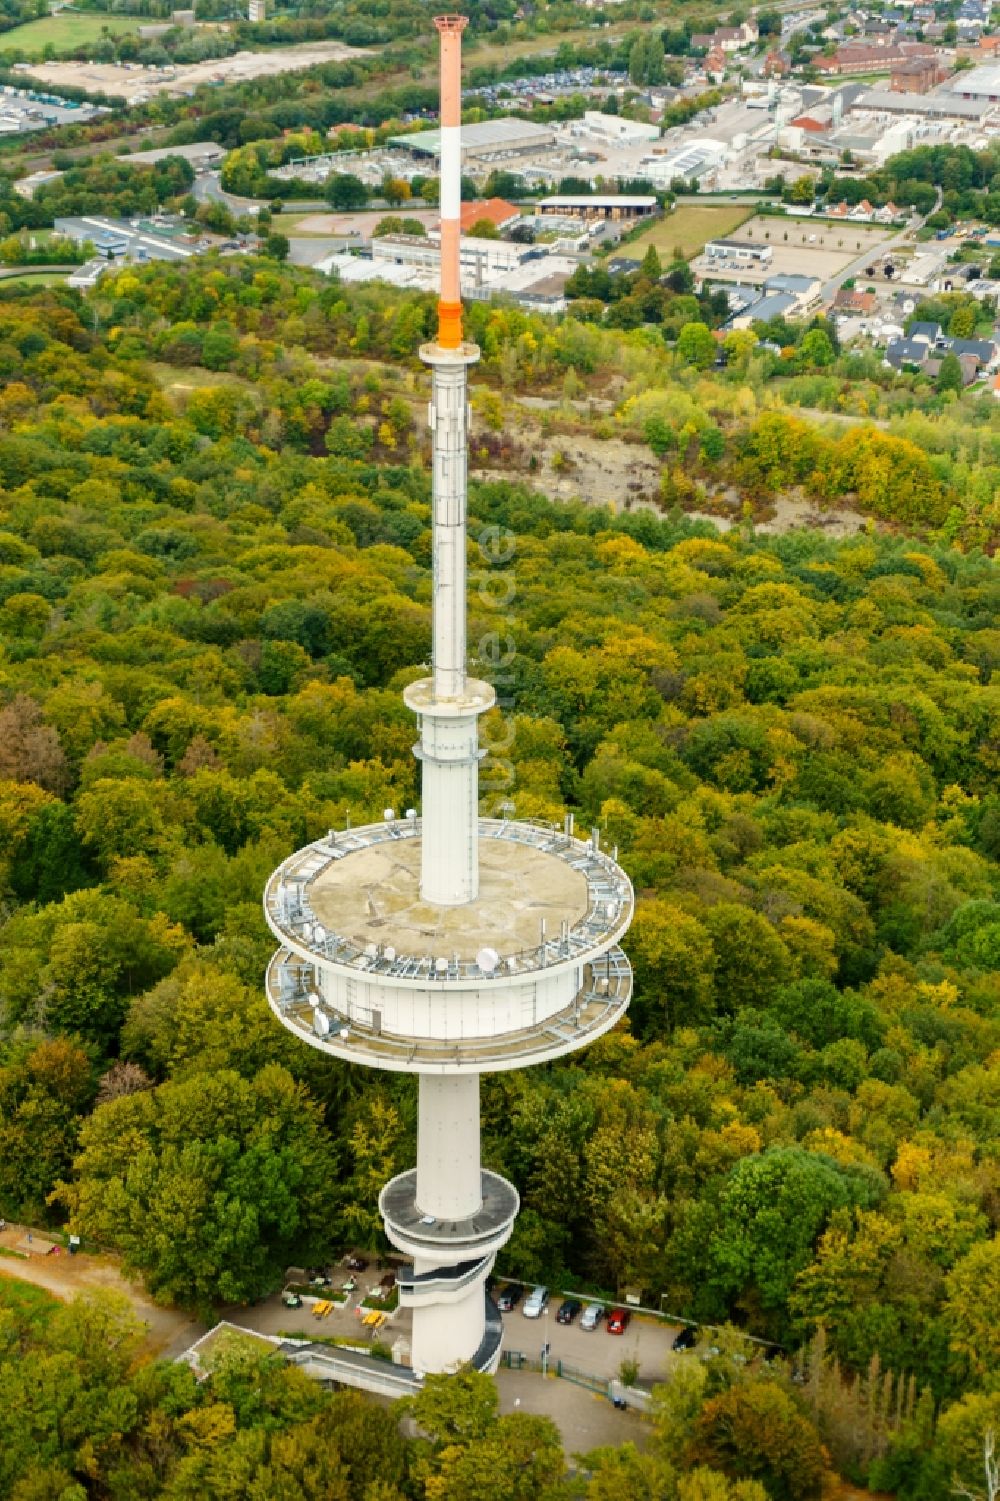 Luftaufnahme Porta Westfalica - Fernmeldeturm und Fernsehturm in Porta Westfalica im Bundesland Nordrhein-Westfalen, Deutschland